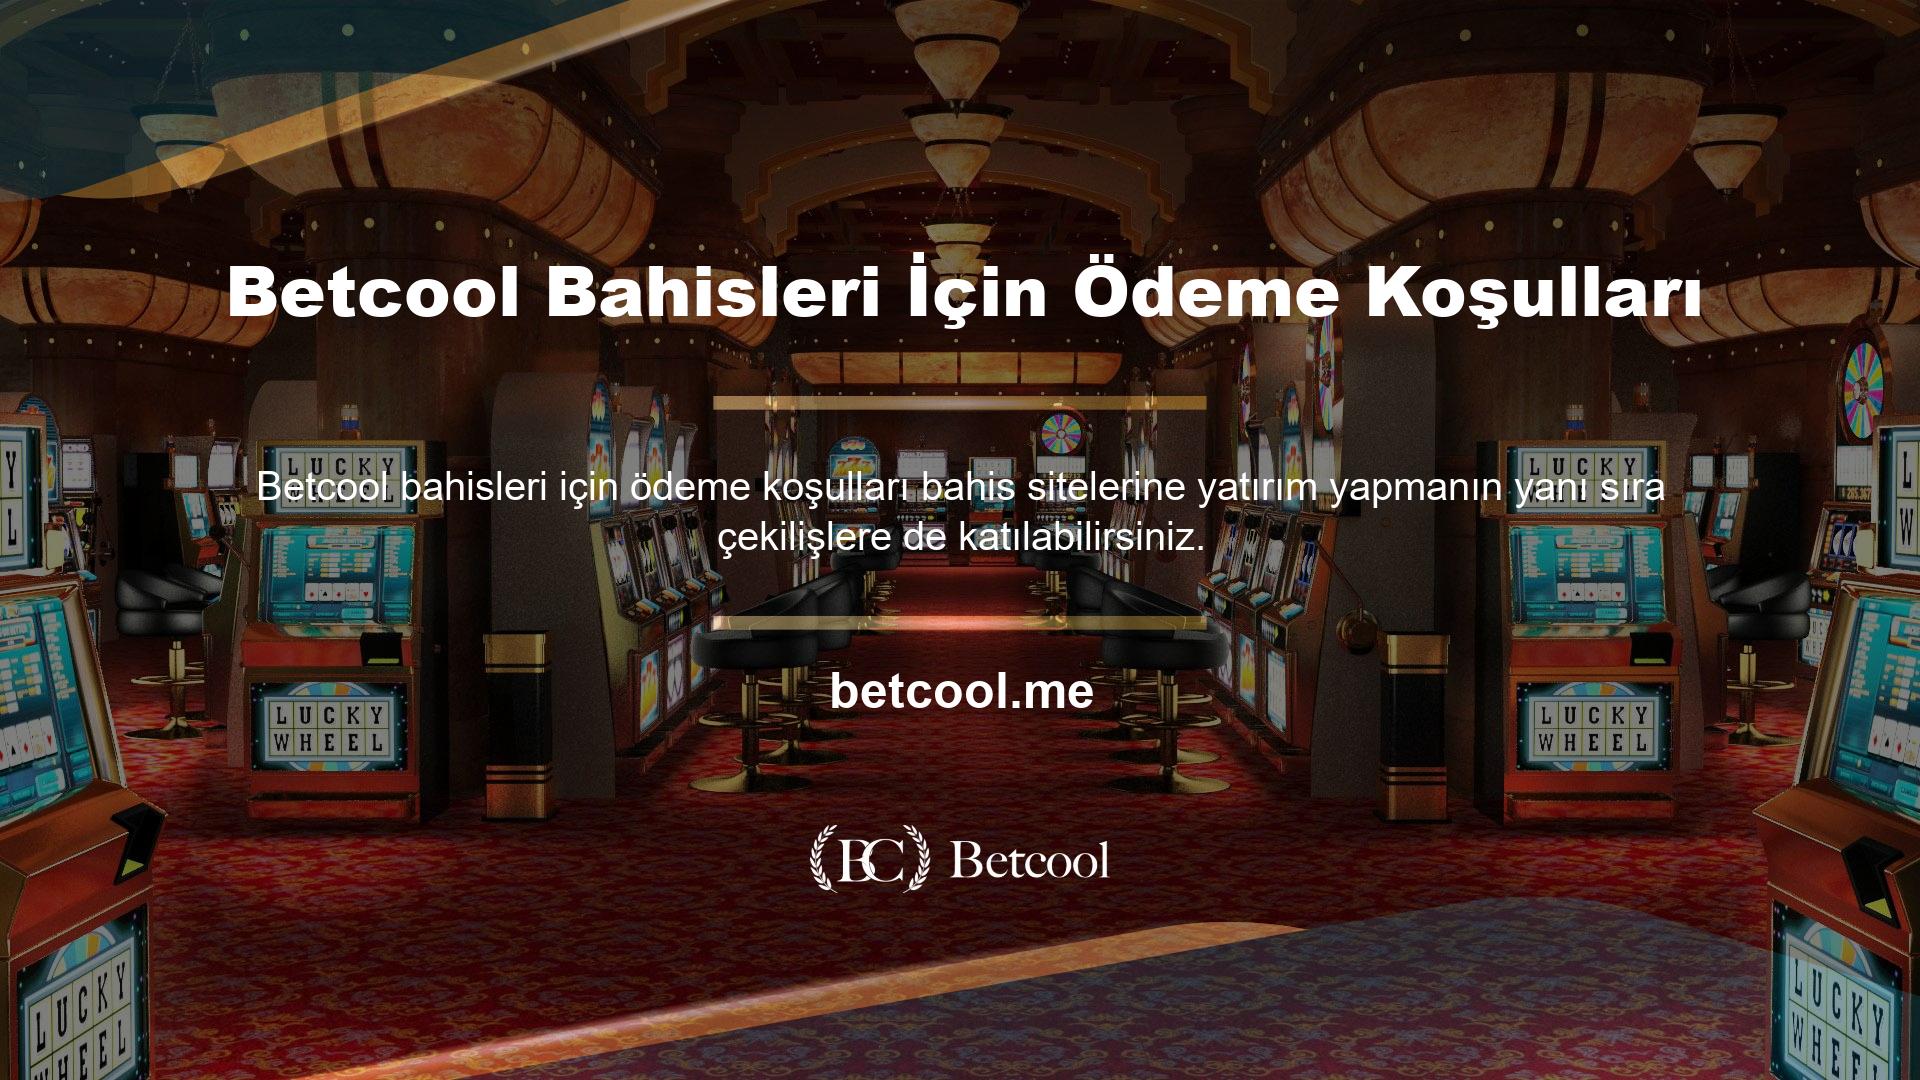 Online casino siteleri arasında faaliyet gösteren diğer casino sitelerinin aksine, Betcool casino sitesi kazançları kazanca çevirmektedir